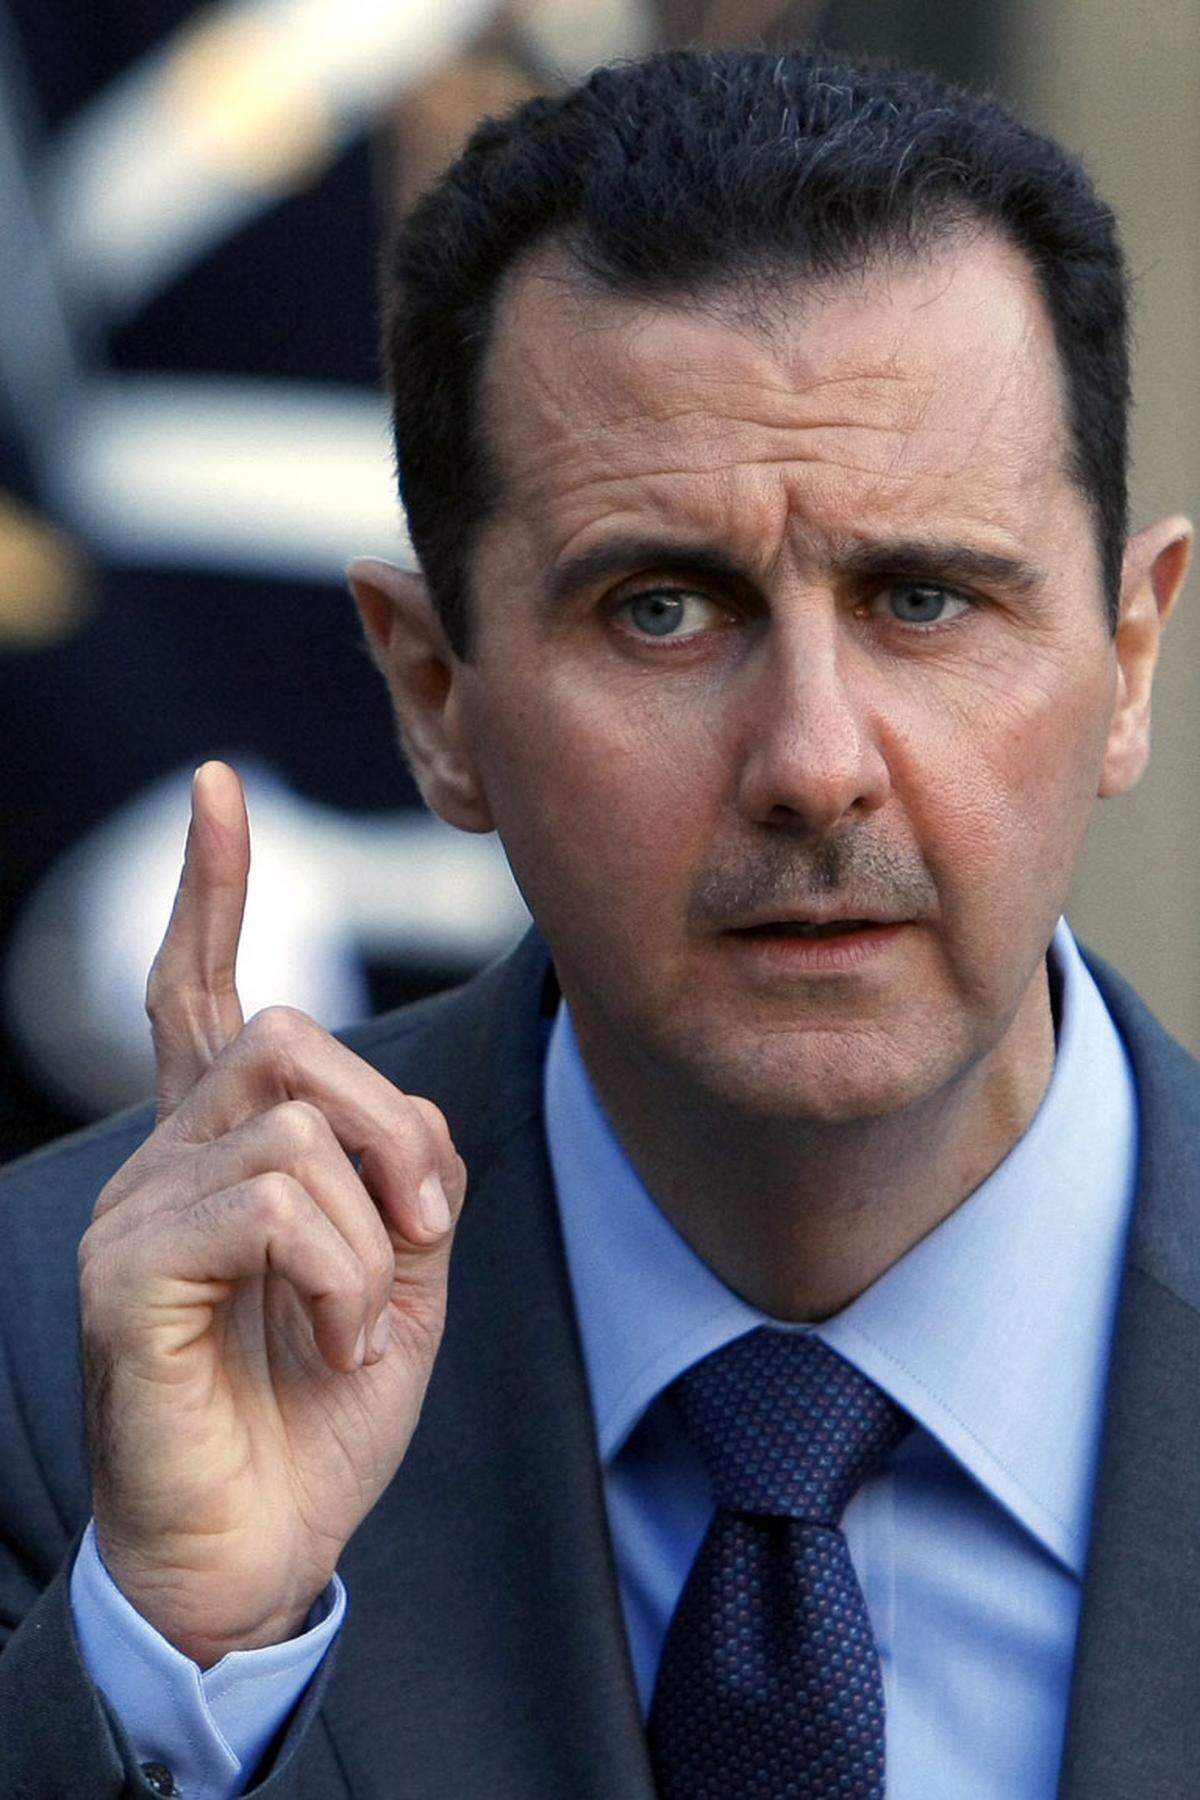 An Präsident Baschar al-Assad wurde im Vorfeld die Botschaft gesandt, dass man die „Ungerechtigkeit“ in Syrien nicht länger akzeptieren wolle. „Wir sind nicht gegen Dich persönlich, sondern gegen Alleinherrschaft, Korruption und Tyrannei sowie dagegen, dass Deine Familie die Reichtümer an sich reißt“. Syrien wird seit 1963 von der Baath-Partei regiert. Seitdem gilt im Land der Ausnahmezustand.